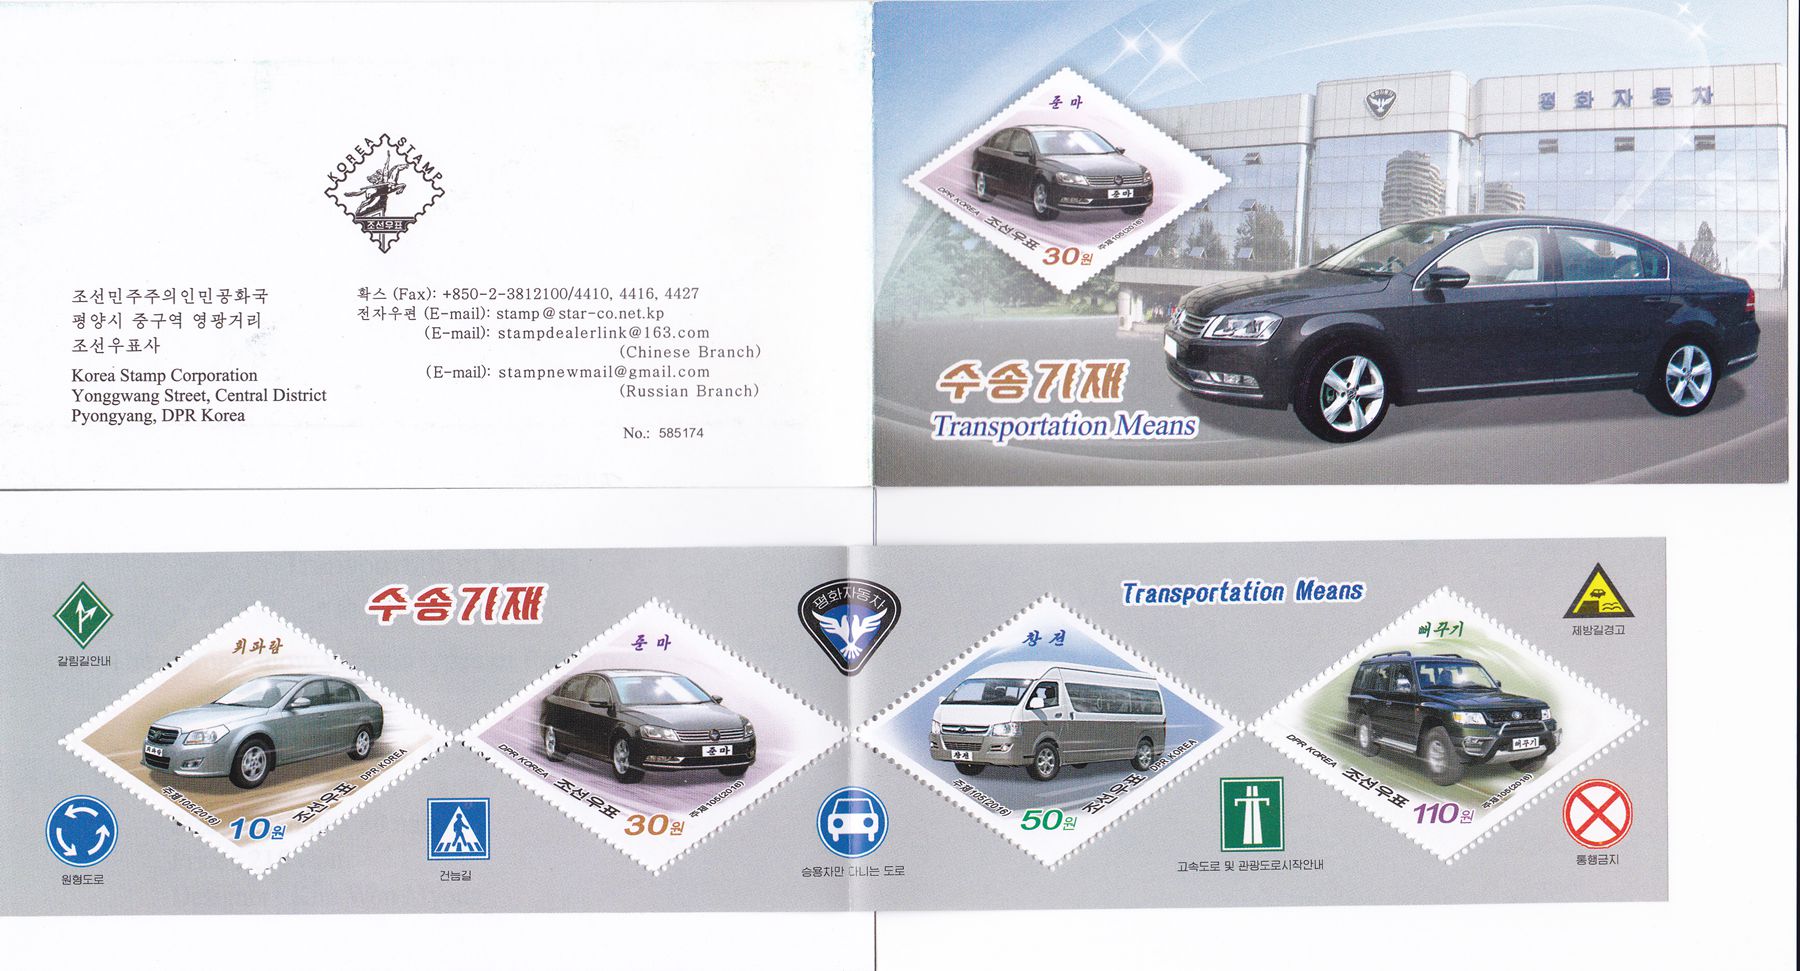 L9058, Korea "Transportation Means -- Cars" Stamp Booklet, 2016